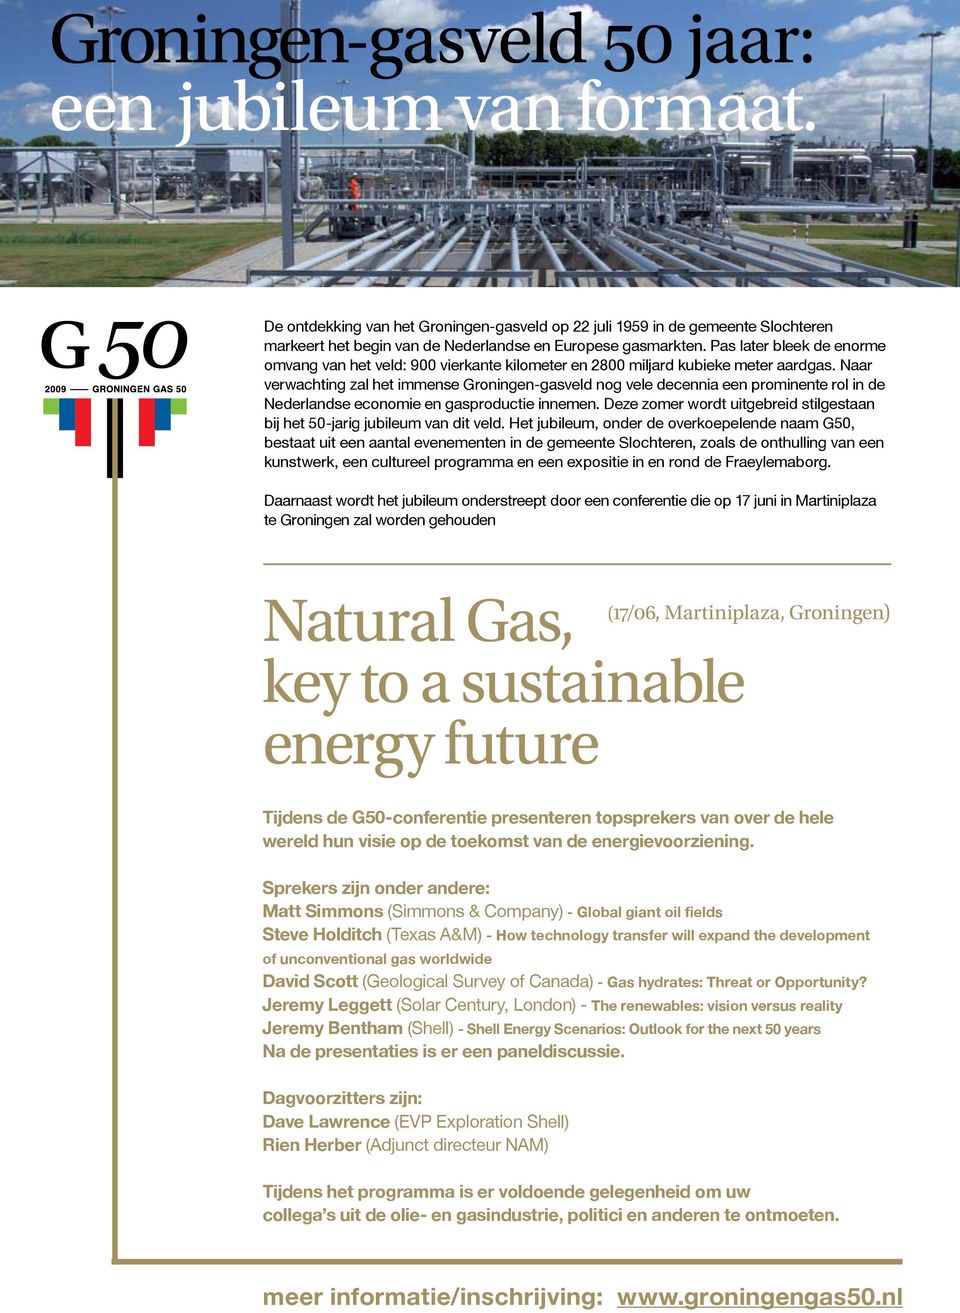 Naar verwachting zal het immense Groningen-gasveld nog vele decennia een prominente rol in de Nederlandse economie en gasproductie innemen.